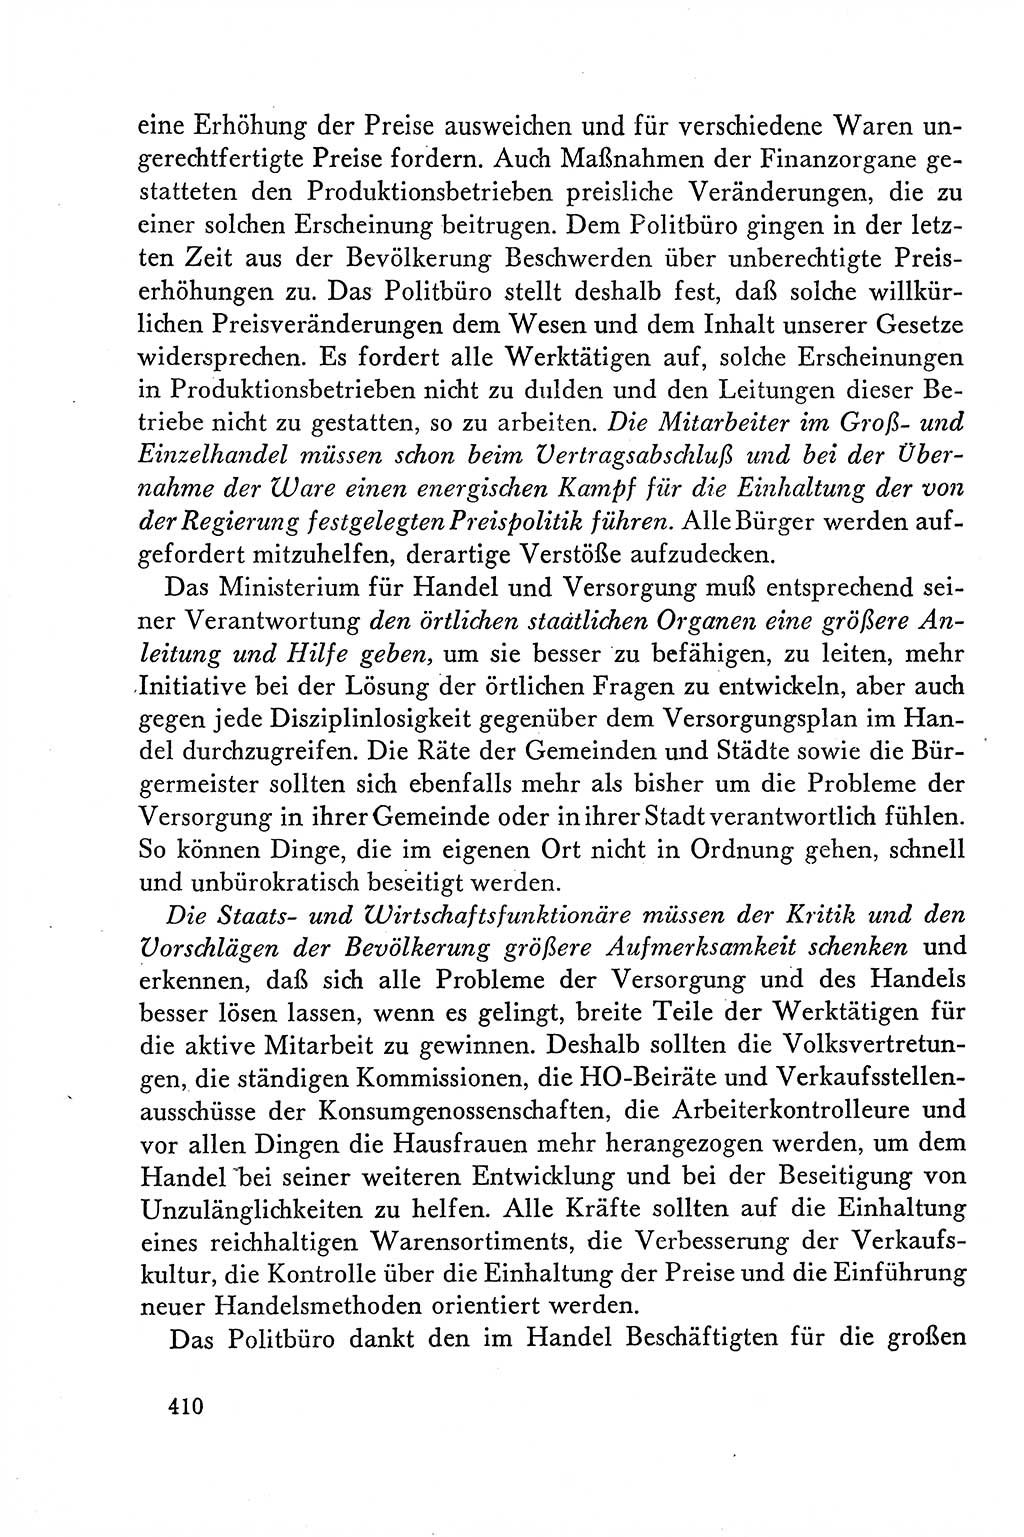 Dokumente der Sozialistischen Einheitspartei Deutschlands (SED) [Deutsche Demokratische Republik (DDR)] 1958-1959, Seite 410 (Dok. SED DDR 1958-1959, S. 410)